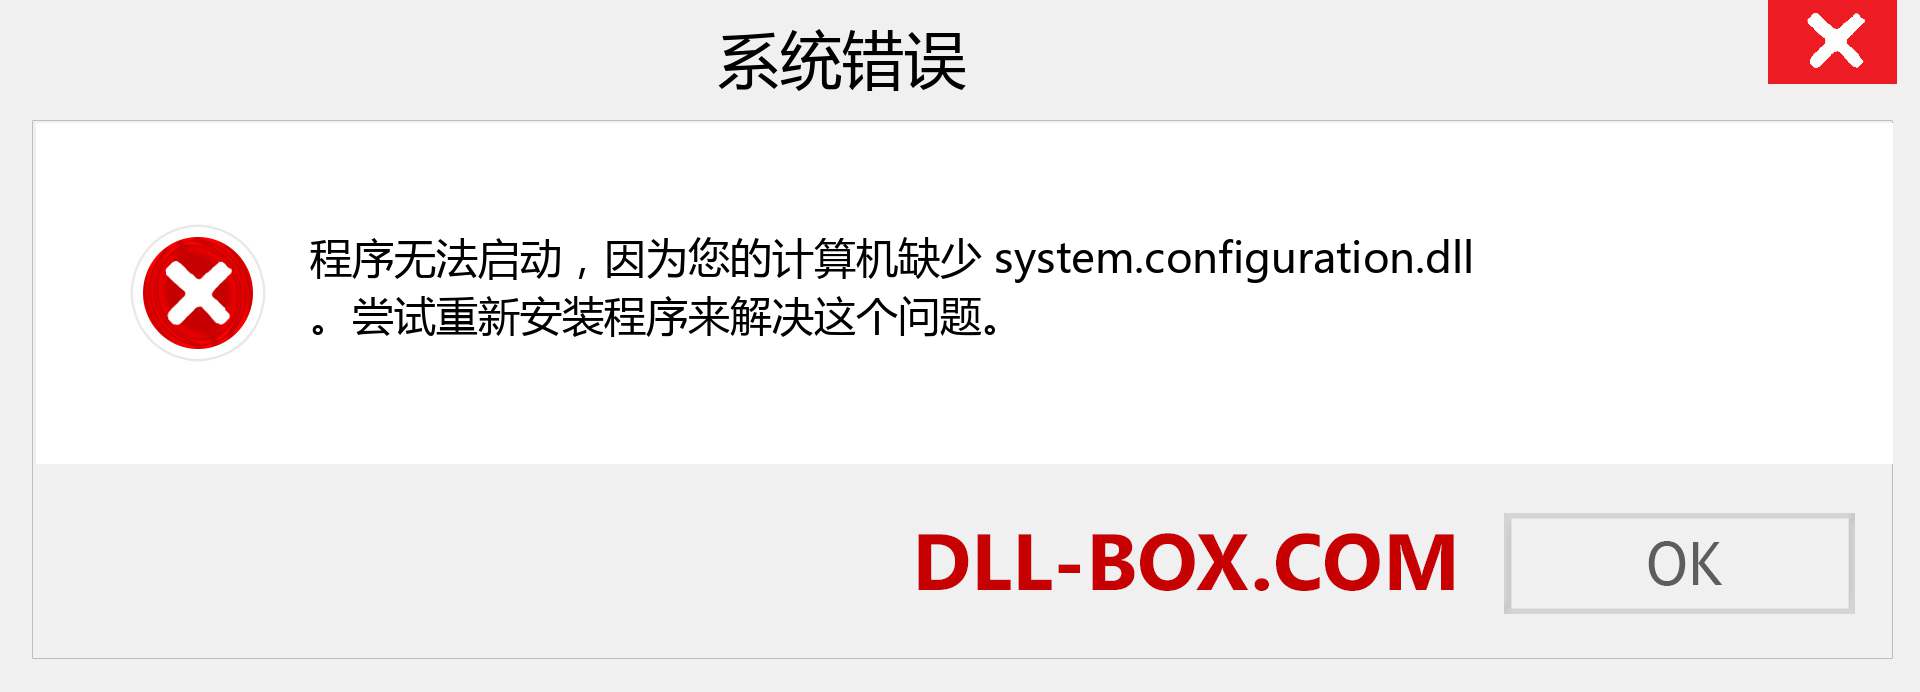 system.configuration.dll 文件丢失？。 适用于 Windows 7、8、10 的下载 - 修复 Windows、照片、图像上的 system.configuration dll 丢失错误